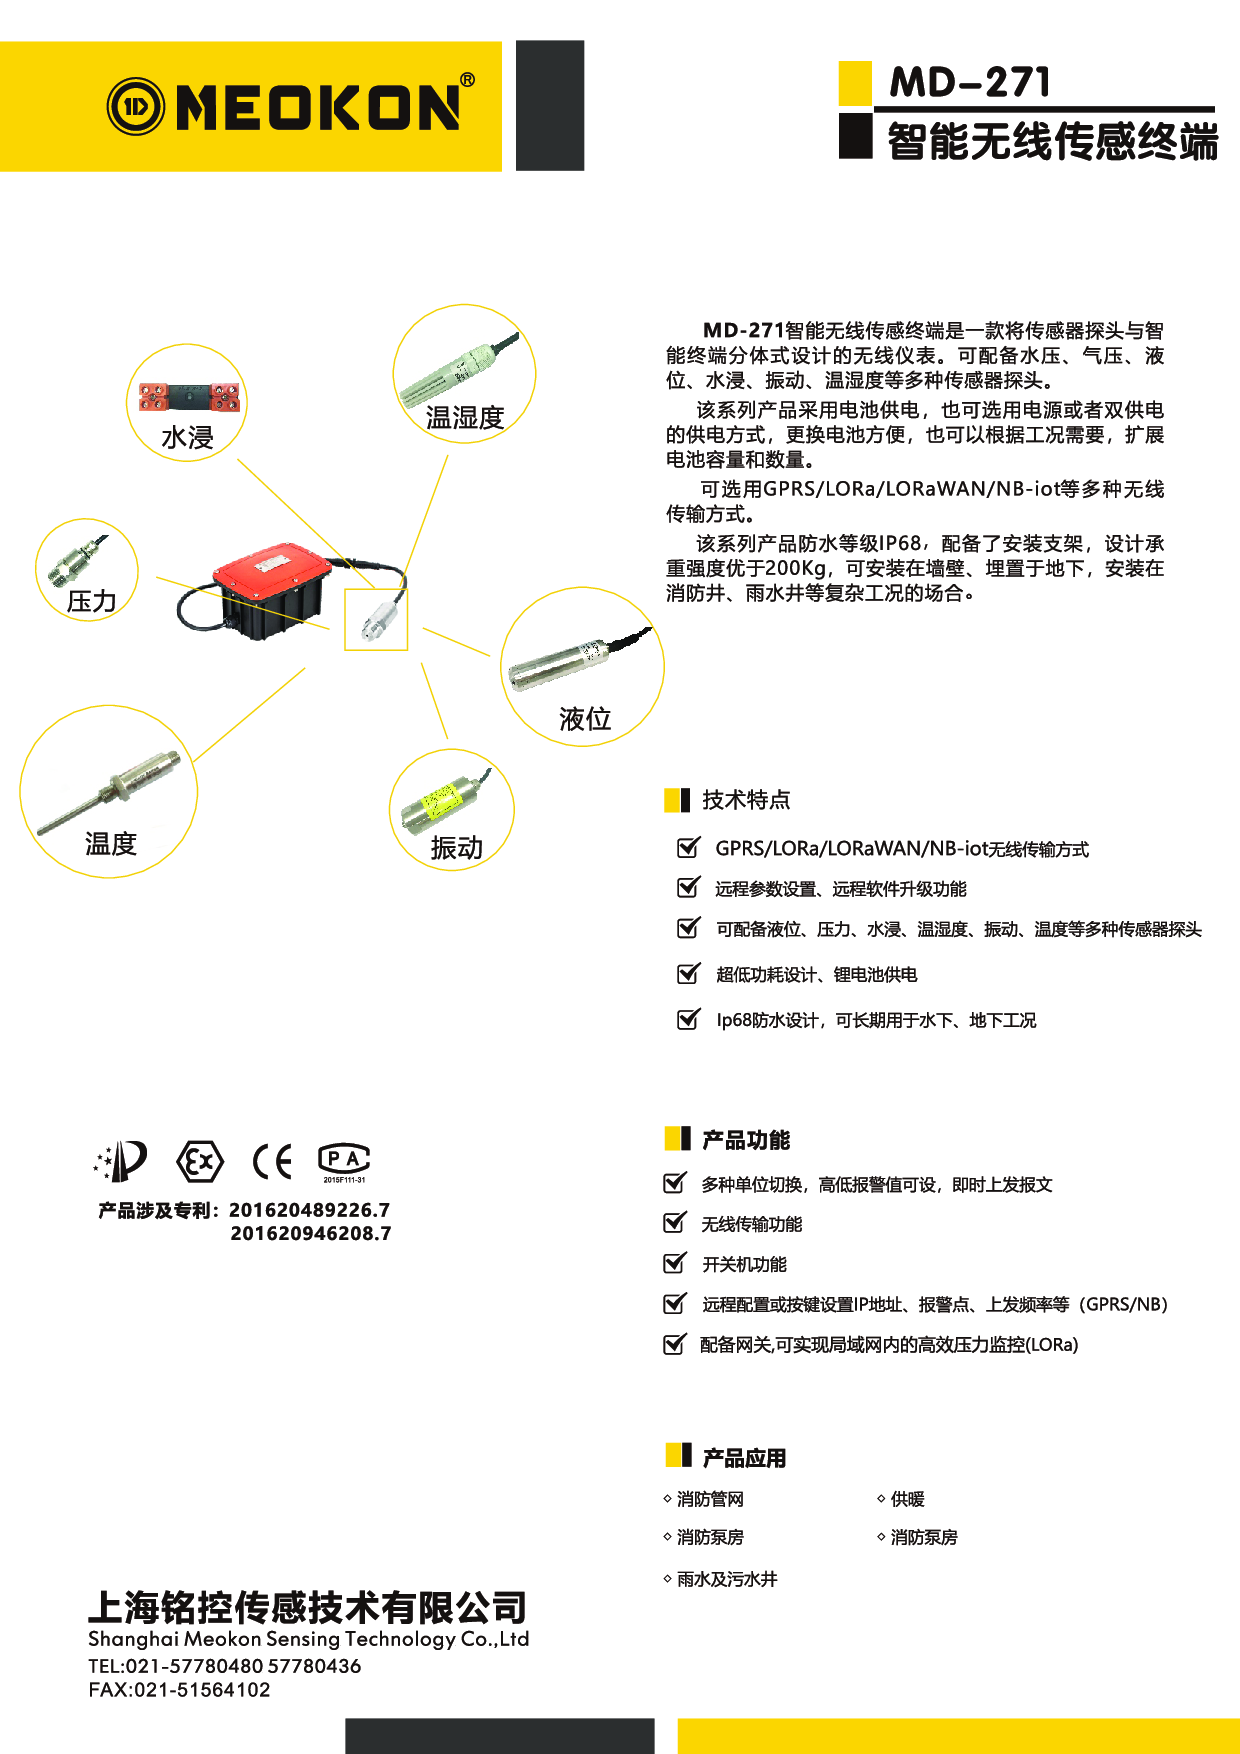 上海铭控MD-S271智能无线传感终端图片